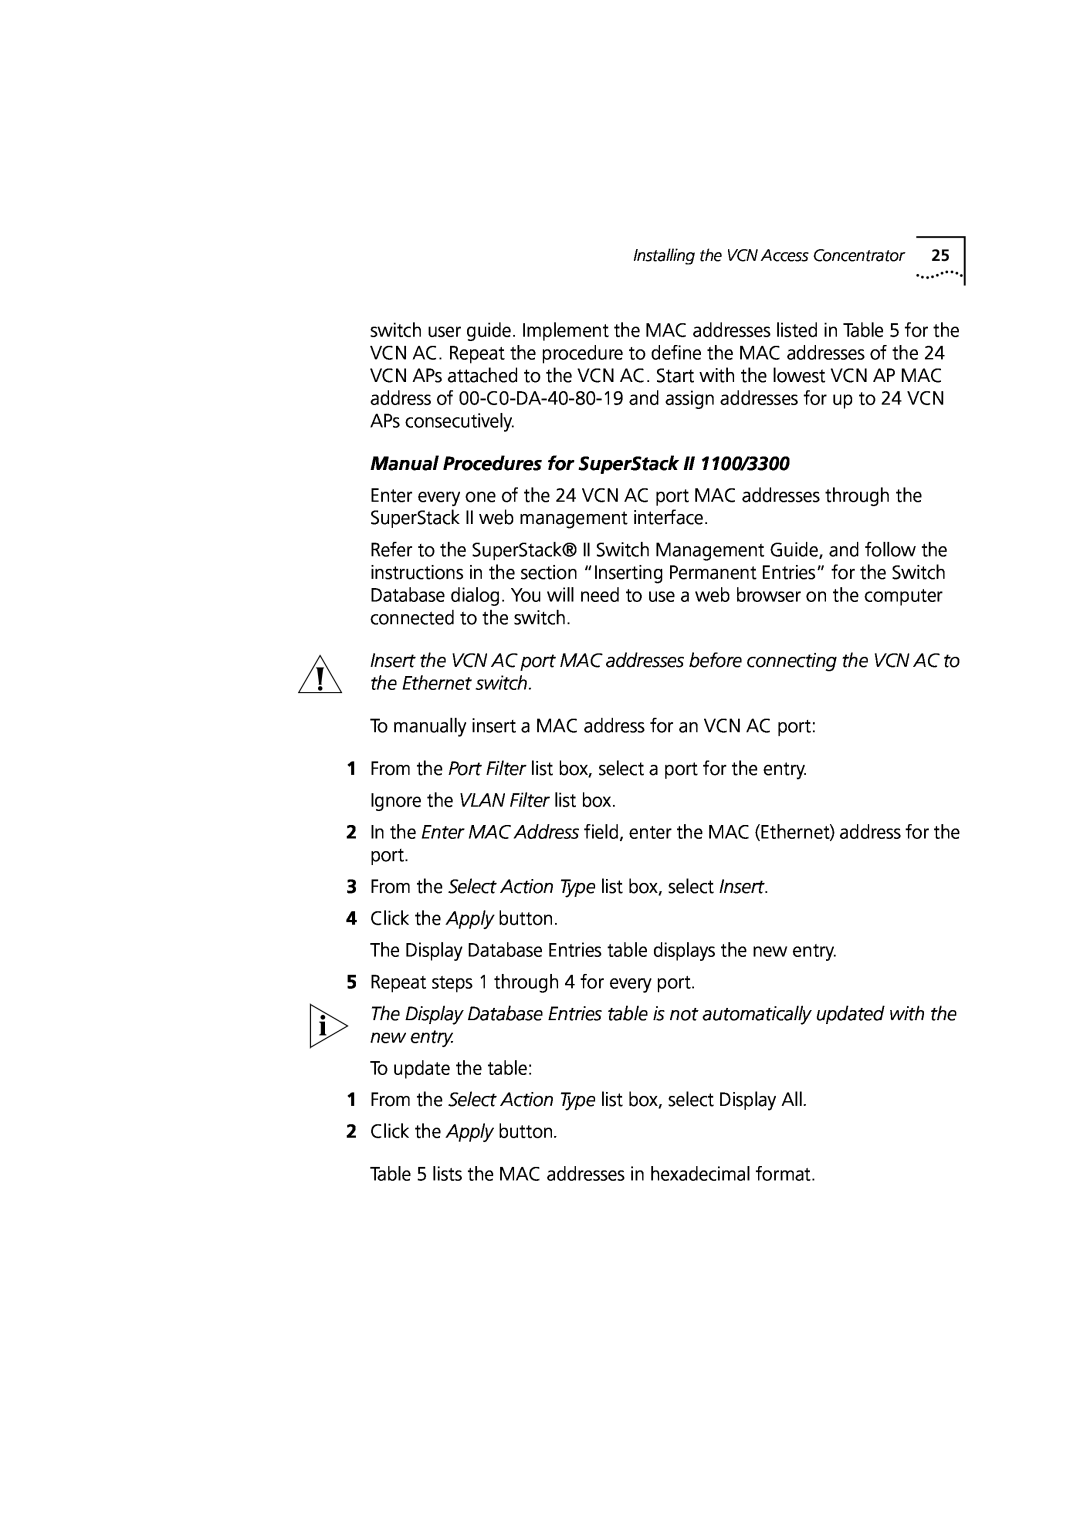 3Com DIA3CV1100-02 manual Manual Procedures for SuperStack II 1100/3300 